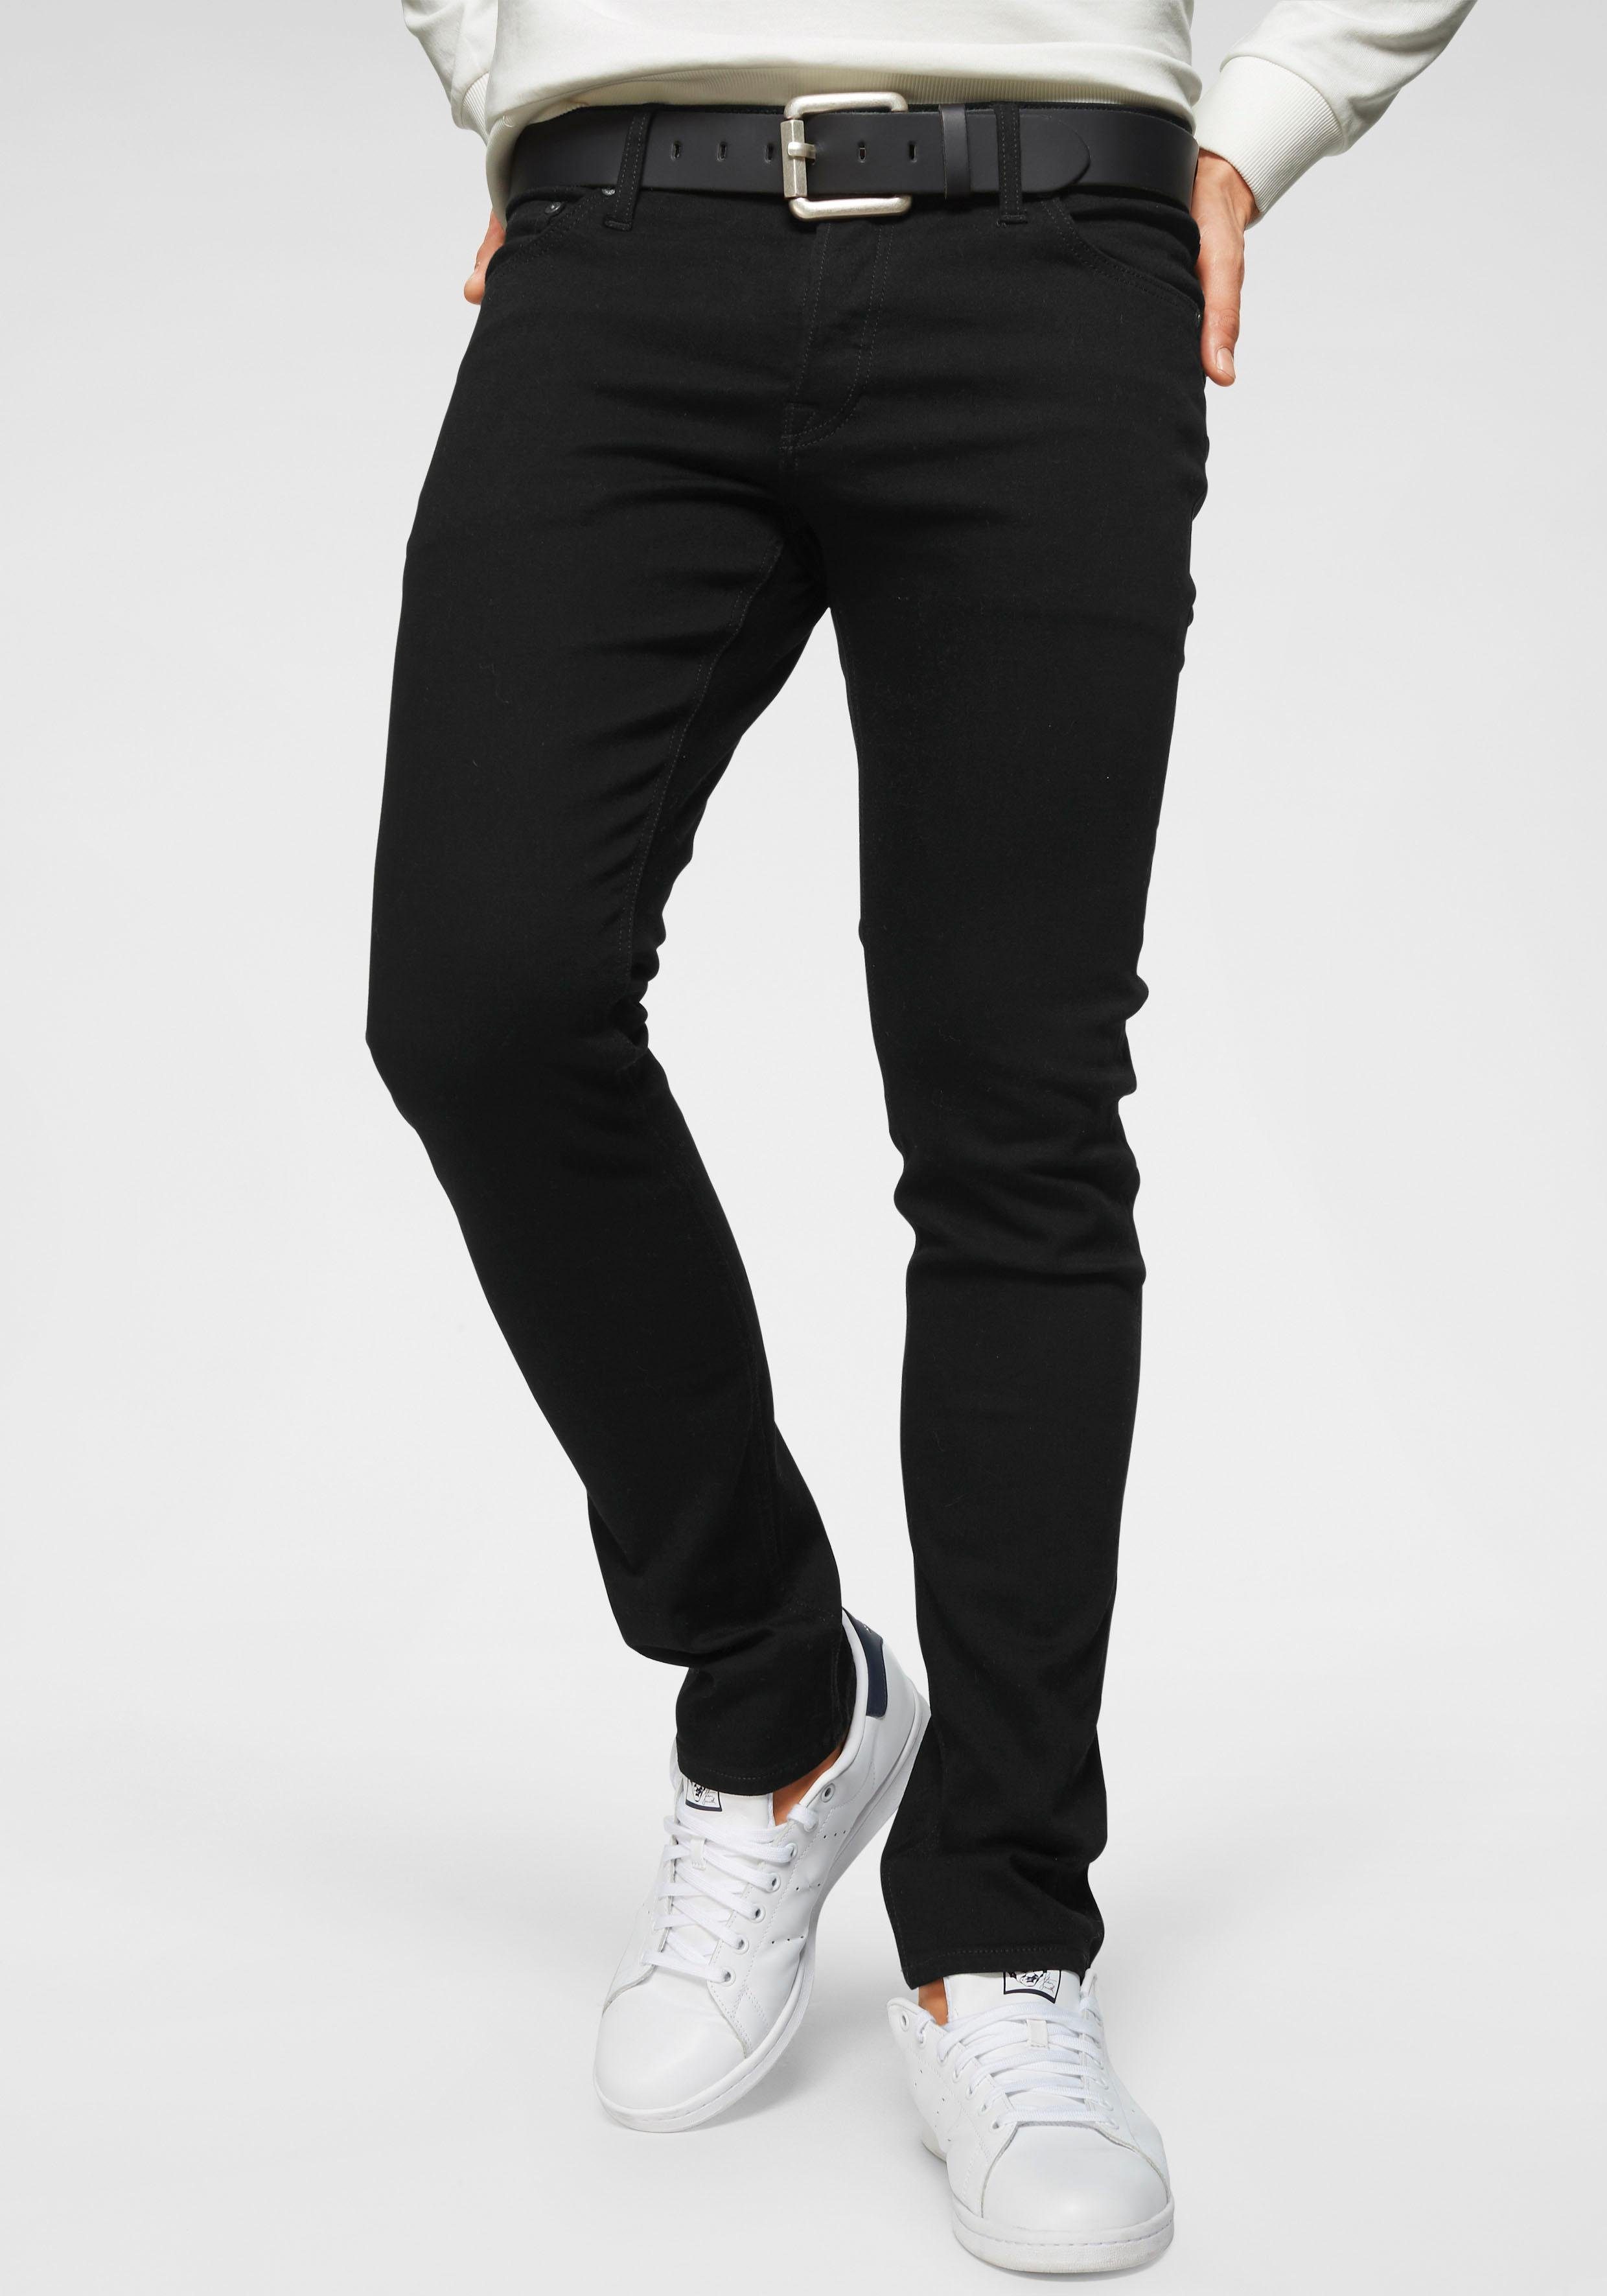 Schwarze Herren Slim-Fit Jeans online kaufen | OTTO